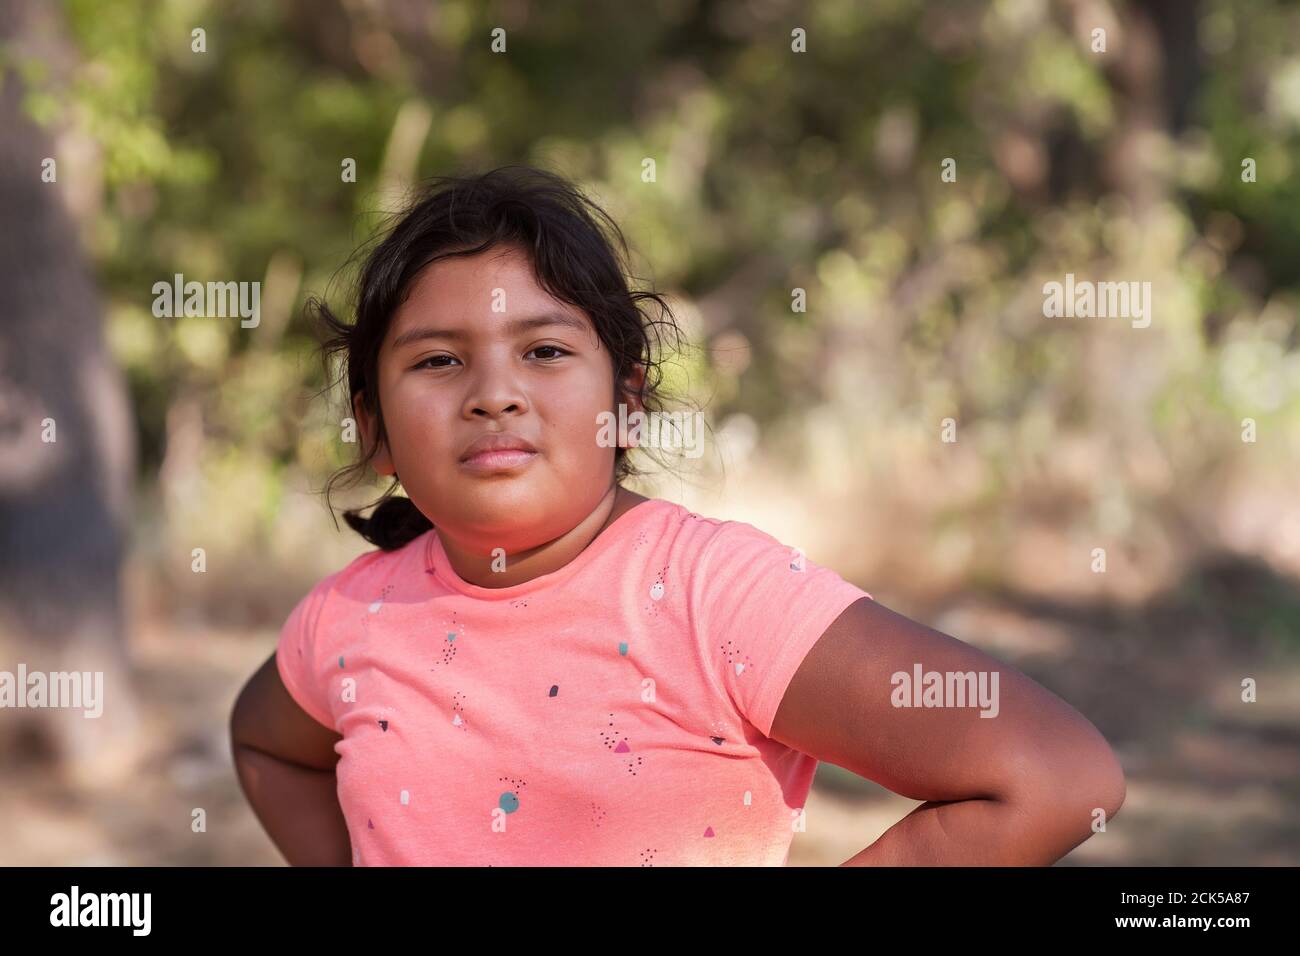 Une jeune fille latino-américaine dont les bras reposent sur les hanches et qui exprime une attitude agressive, hostile ou intimidante. Banque D'Images